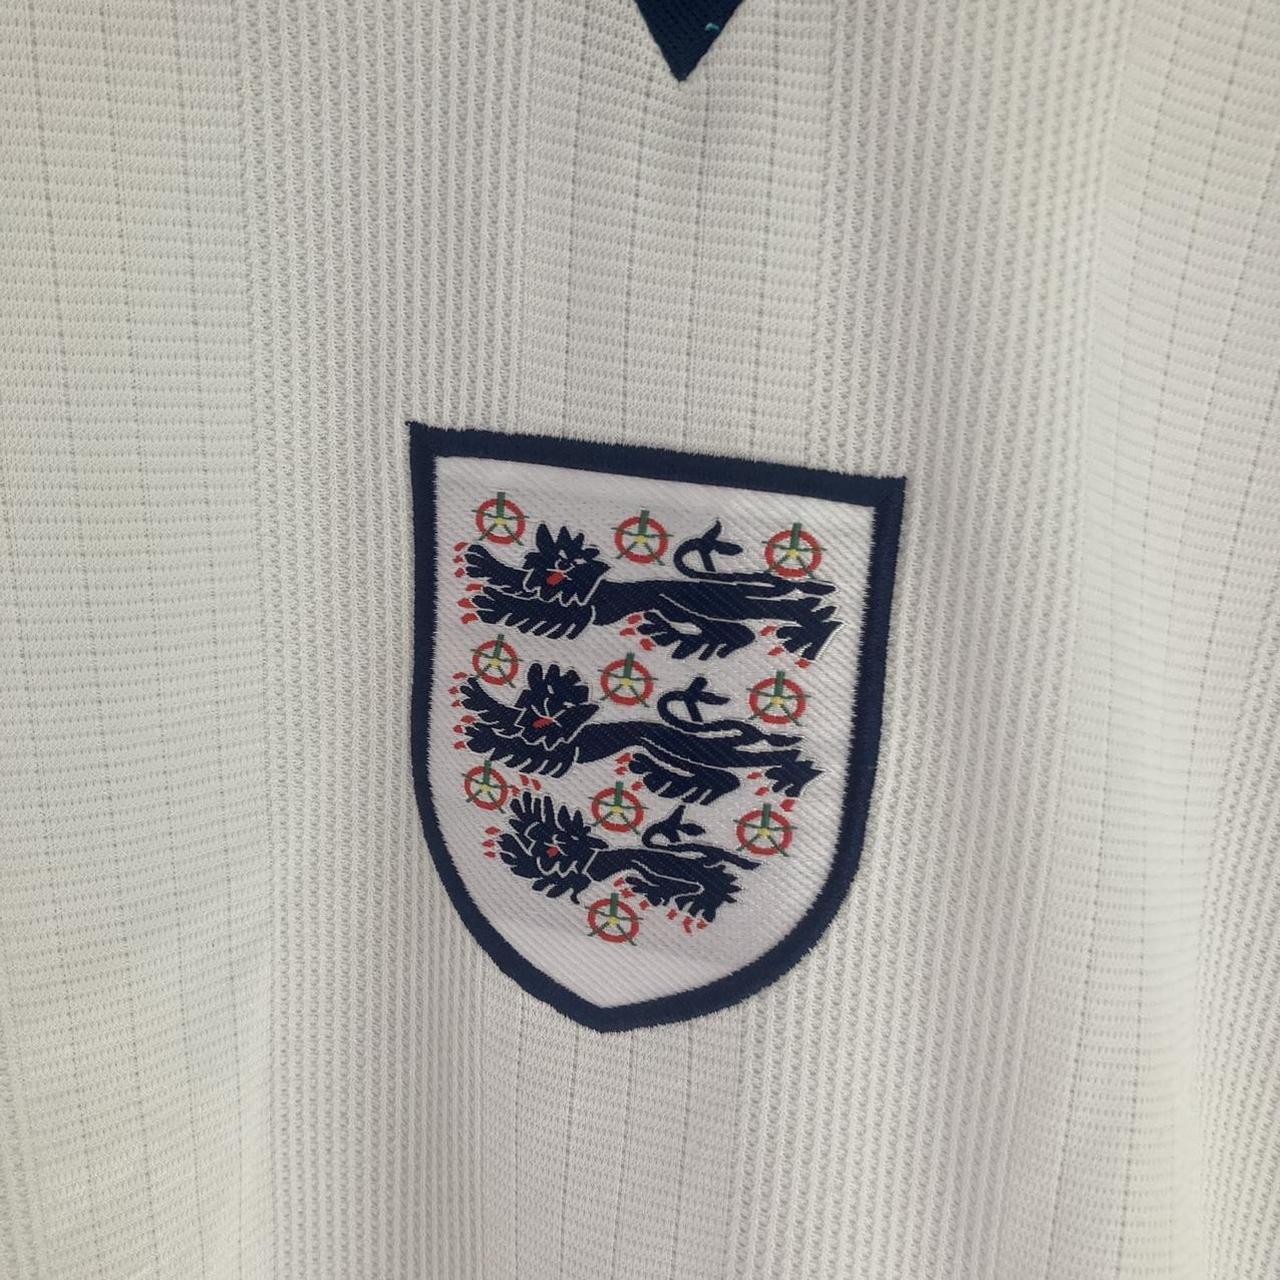 Replica England Euro 96’ football shirt . Only ever... - Depop